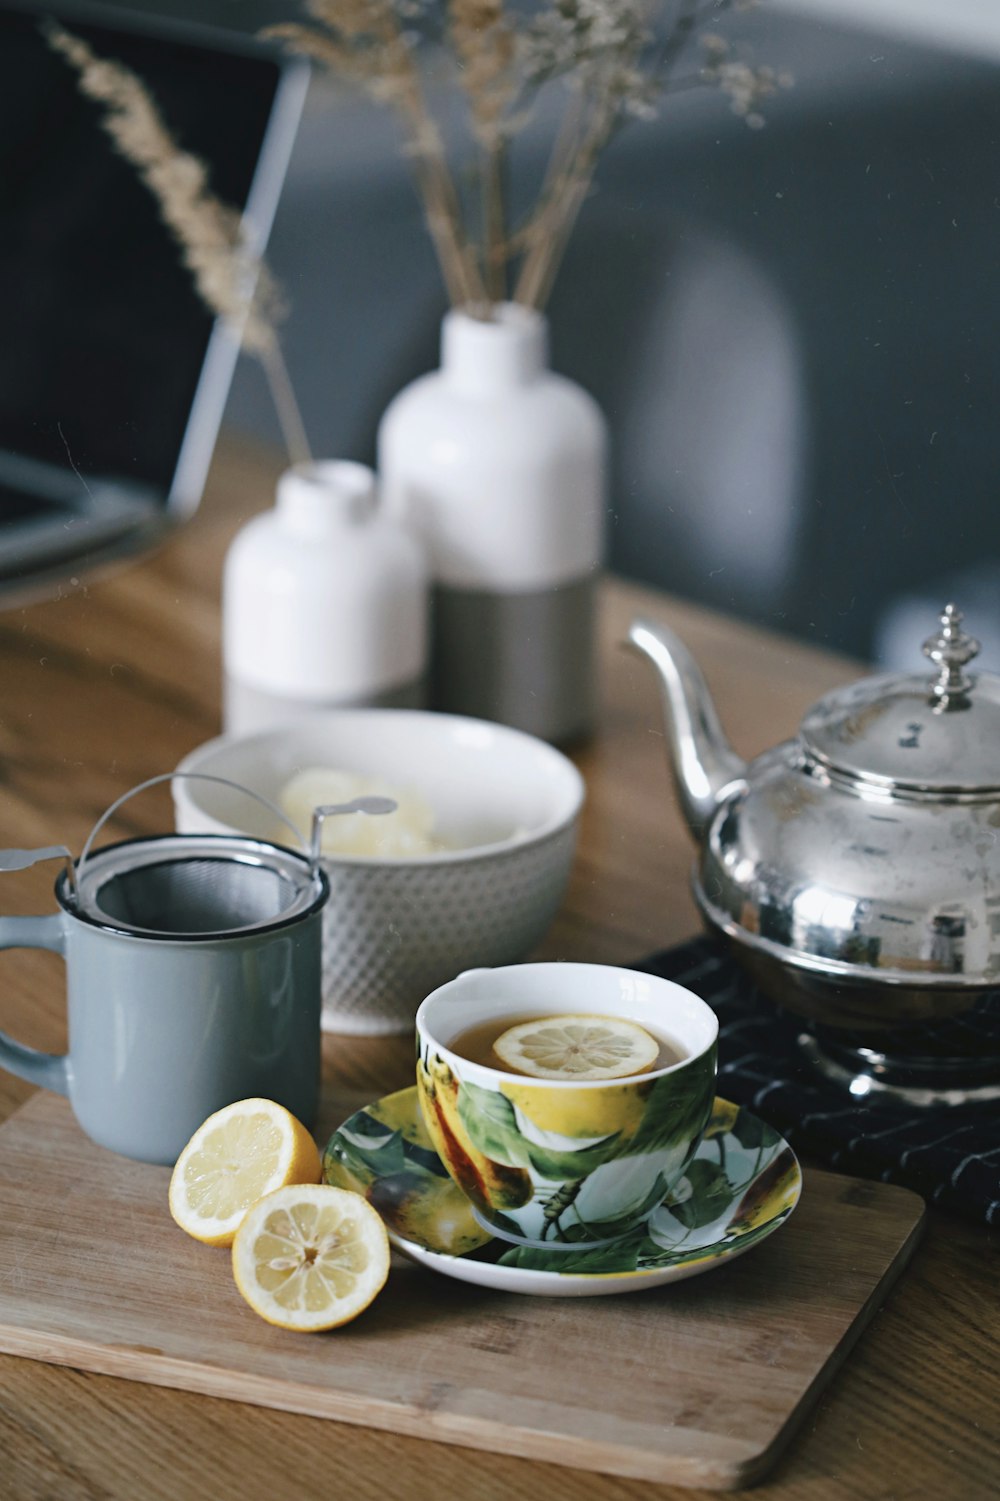 tetera gris al lado de la taza llena de té y limón encima de la mesa